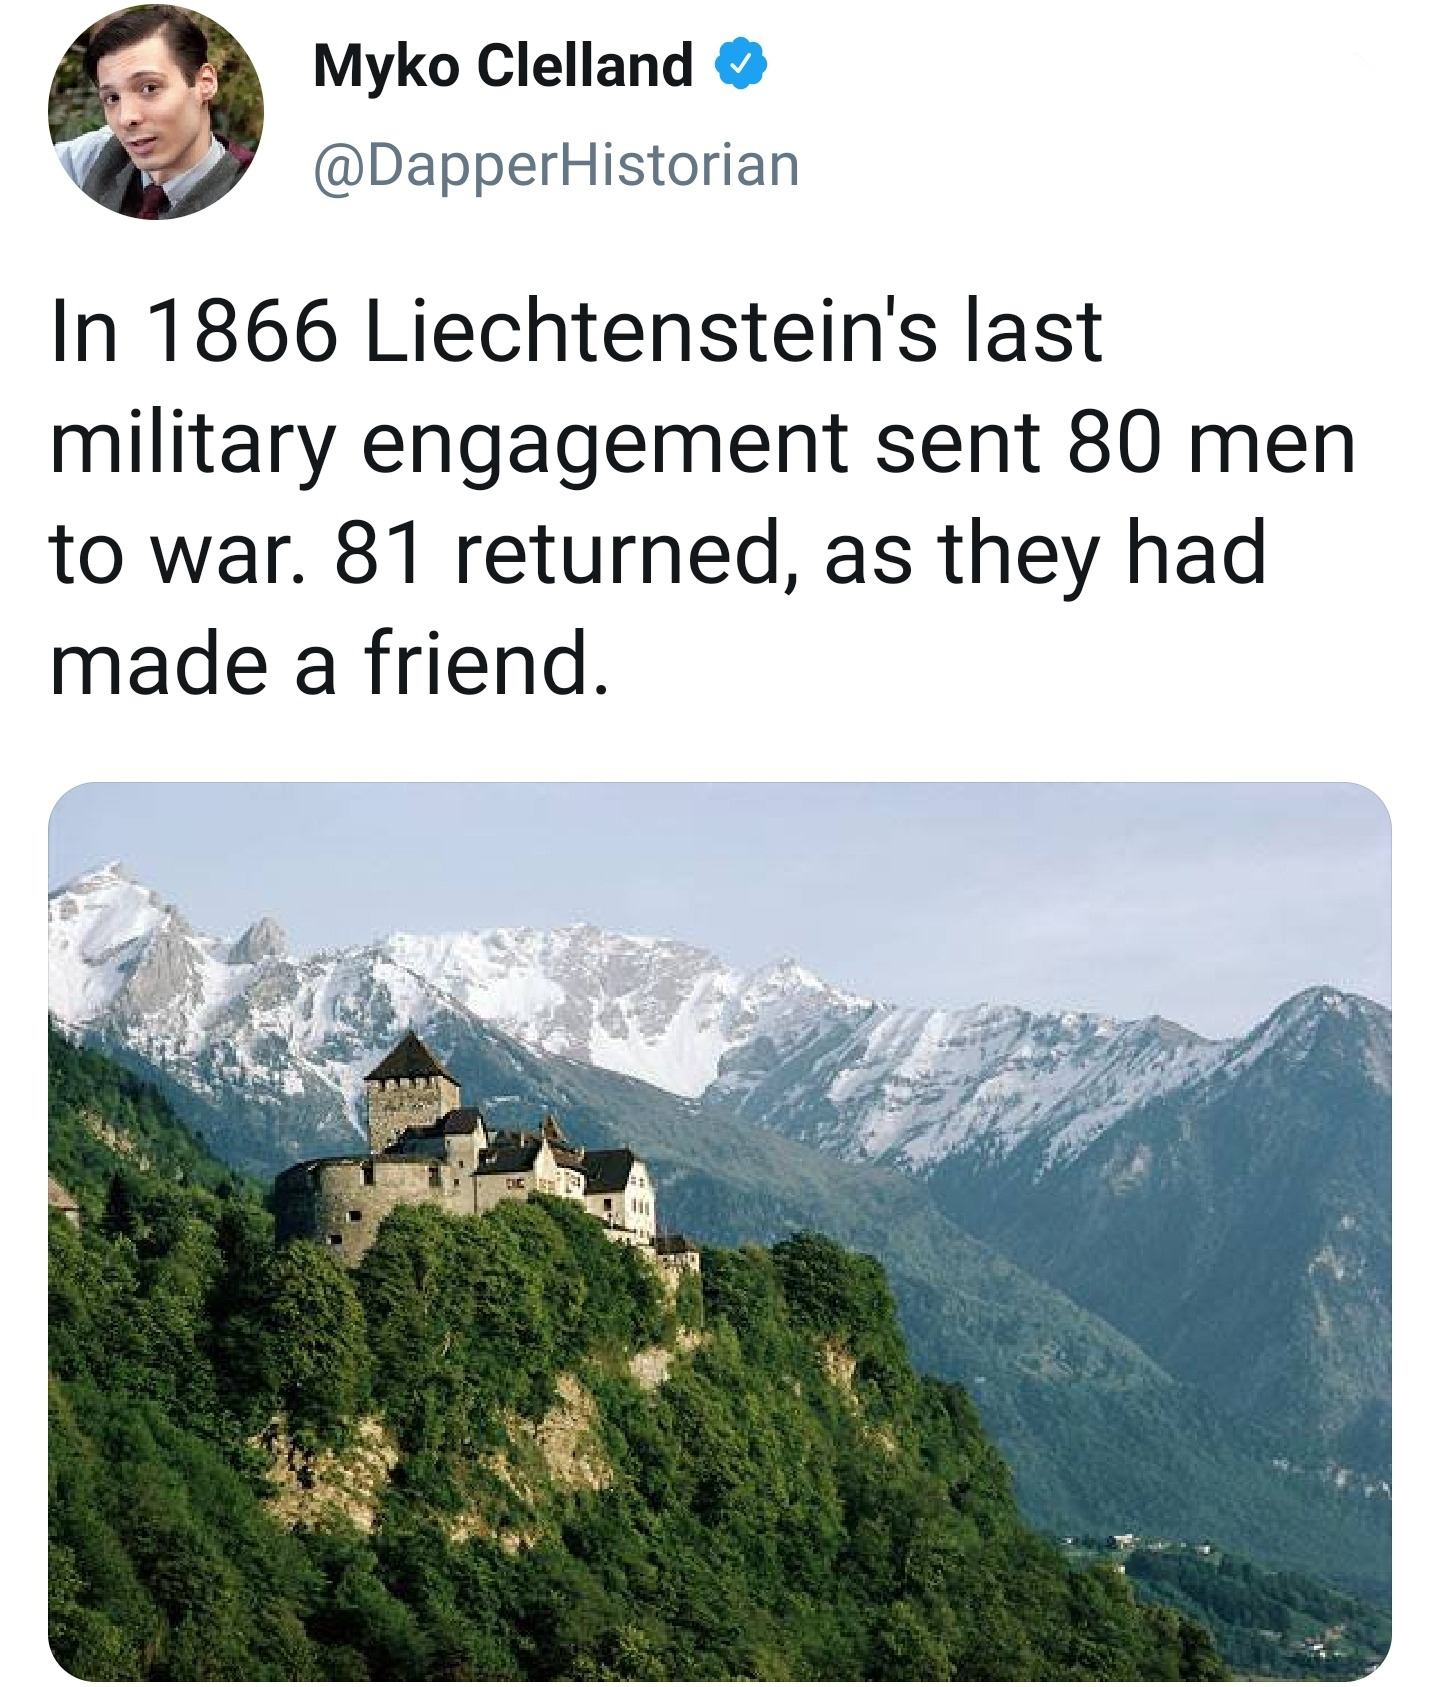 liechtenstein country - Myko Clelland Historian In 1866 Liechtenstein's last military engagement sent 80 men to war. 81 returned, as they had made a friend.